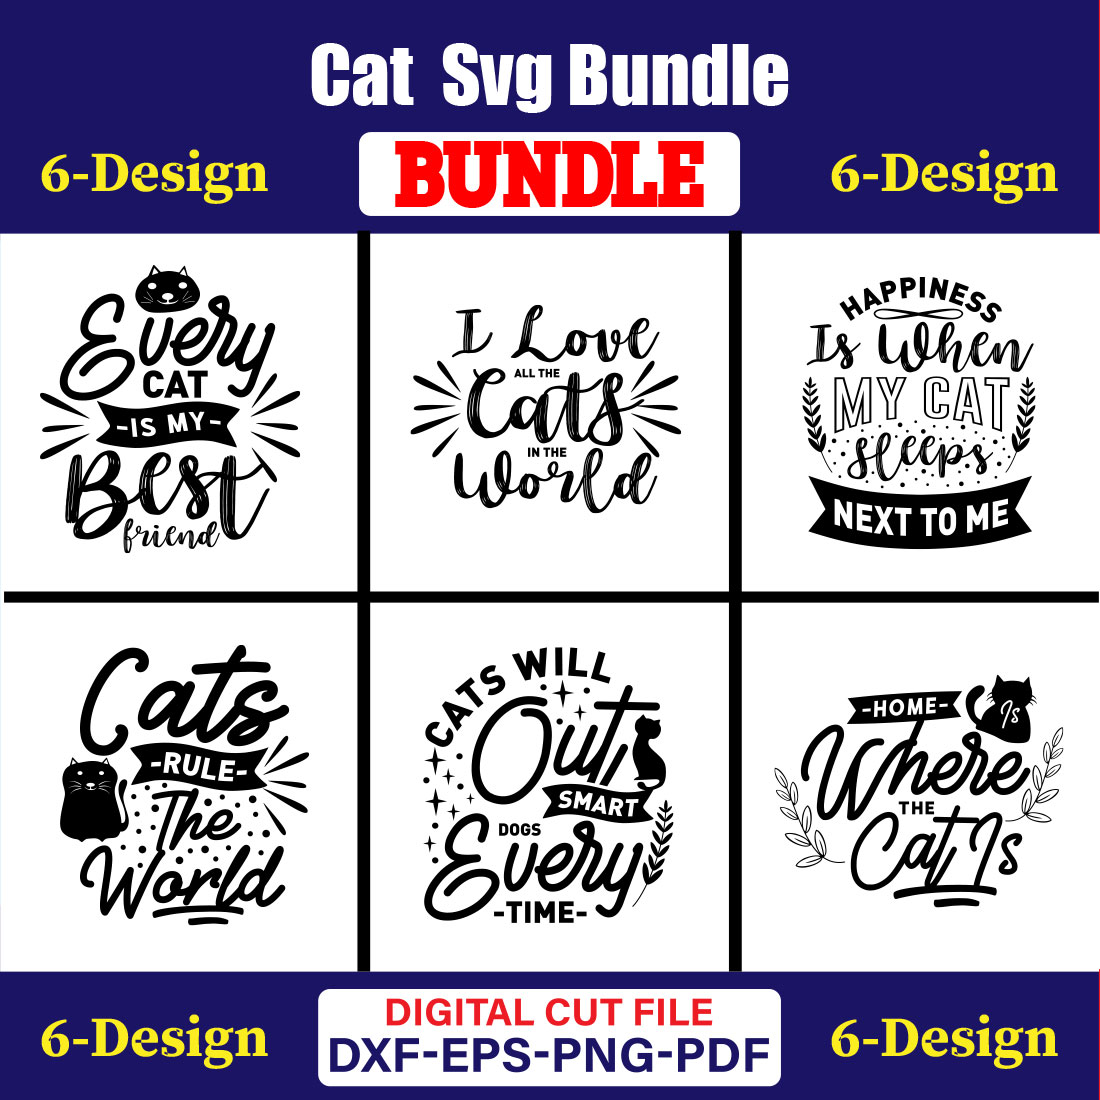 Cat T-shirt Design Bundle Vol-13 cover image.